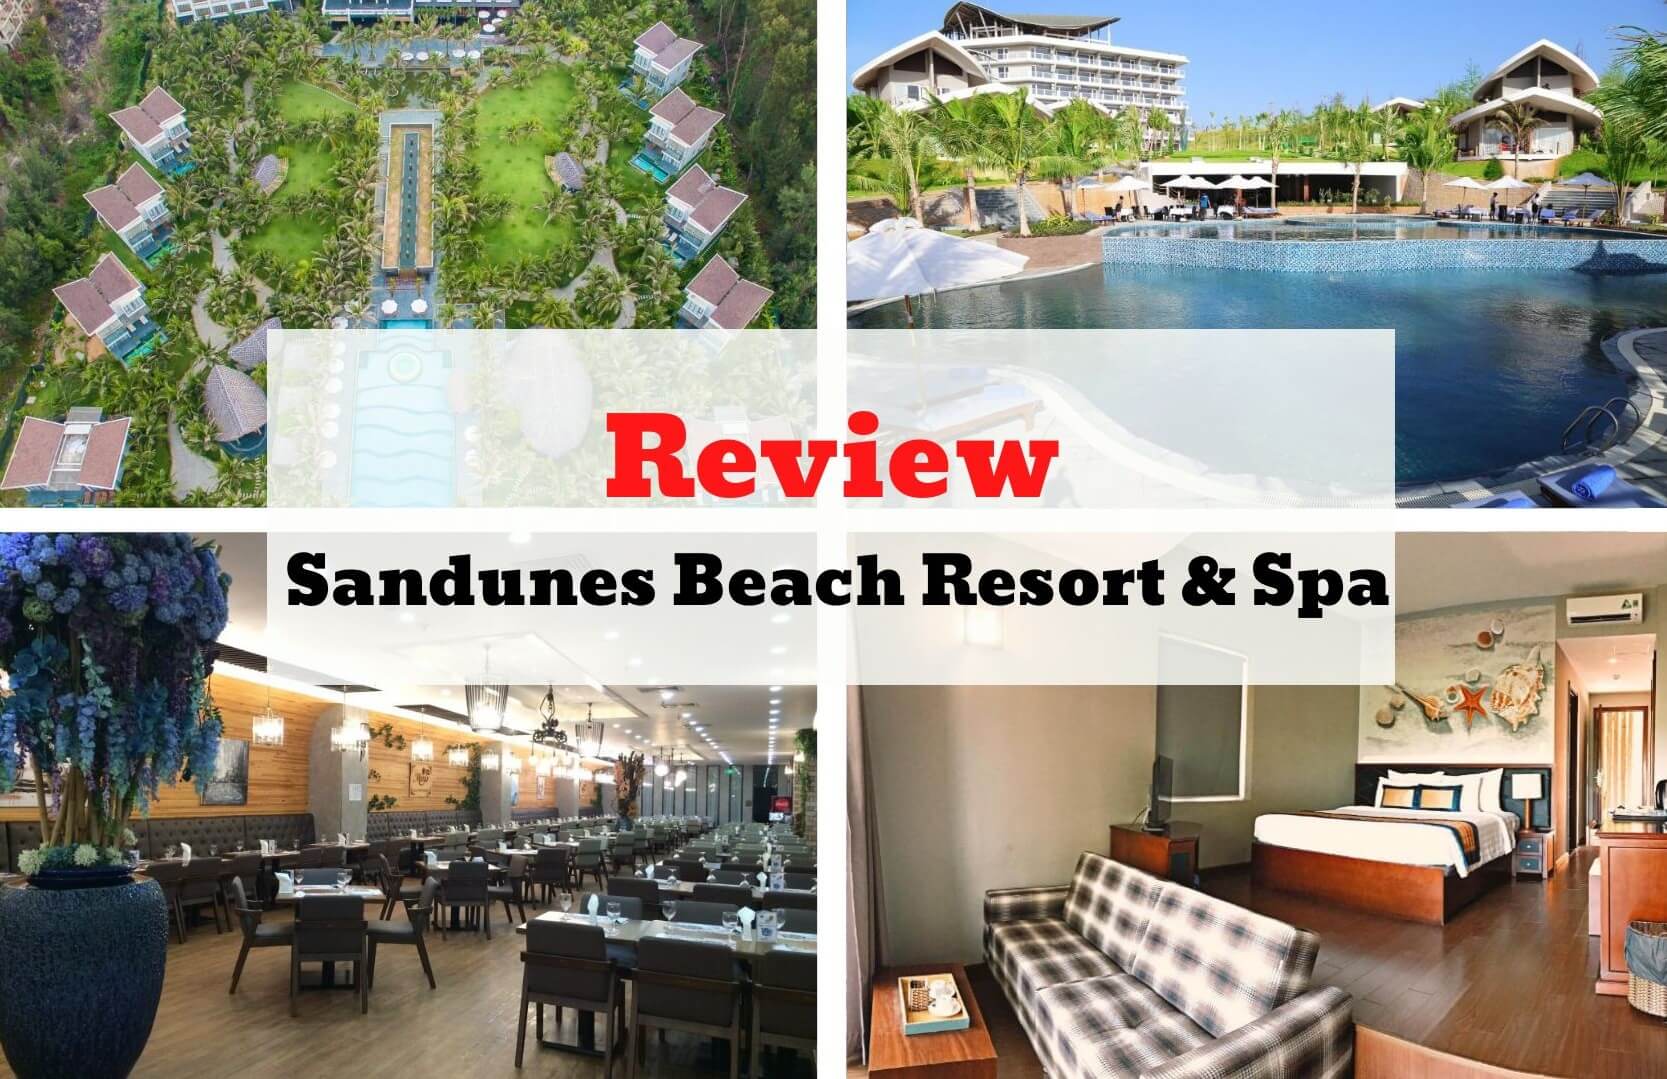 Review Sandunes Beach Resort & Spa - Kiến trúc hiện đại hòa cùng hương vị biển khơi